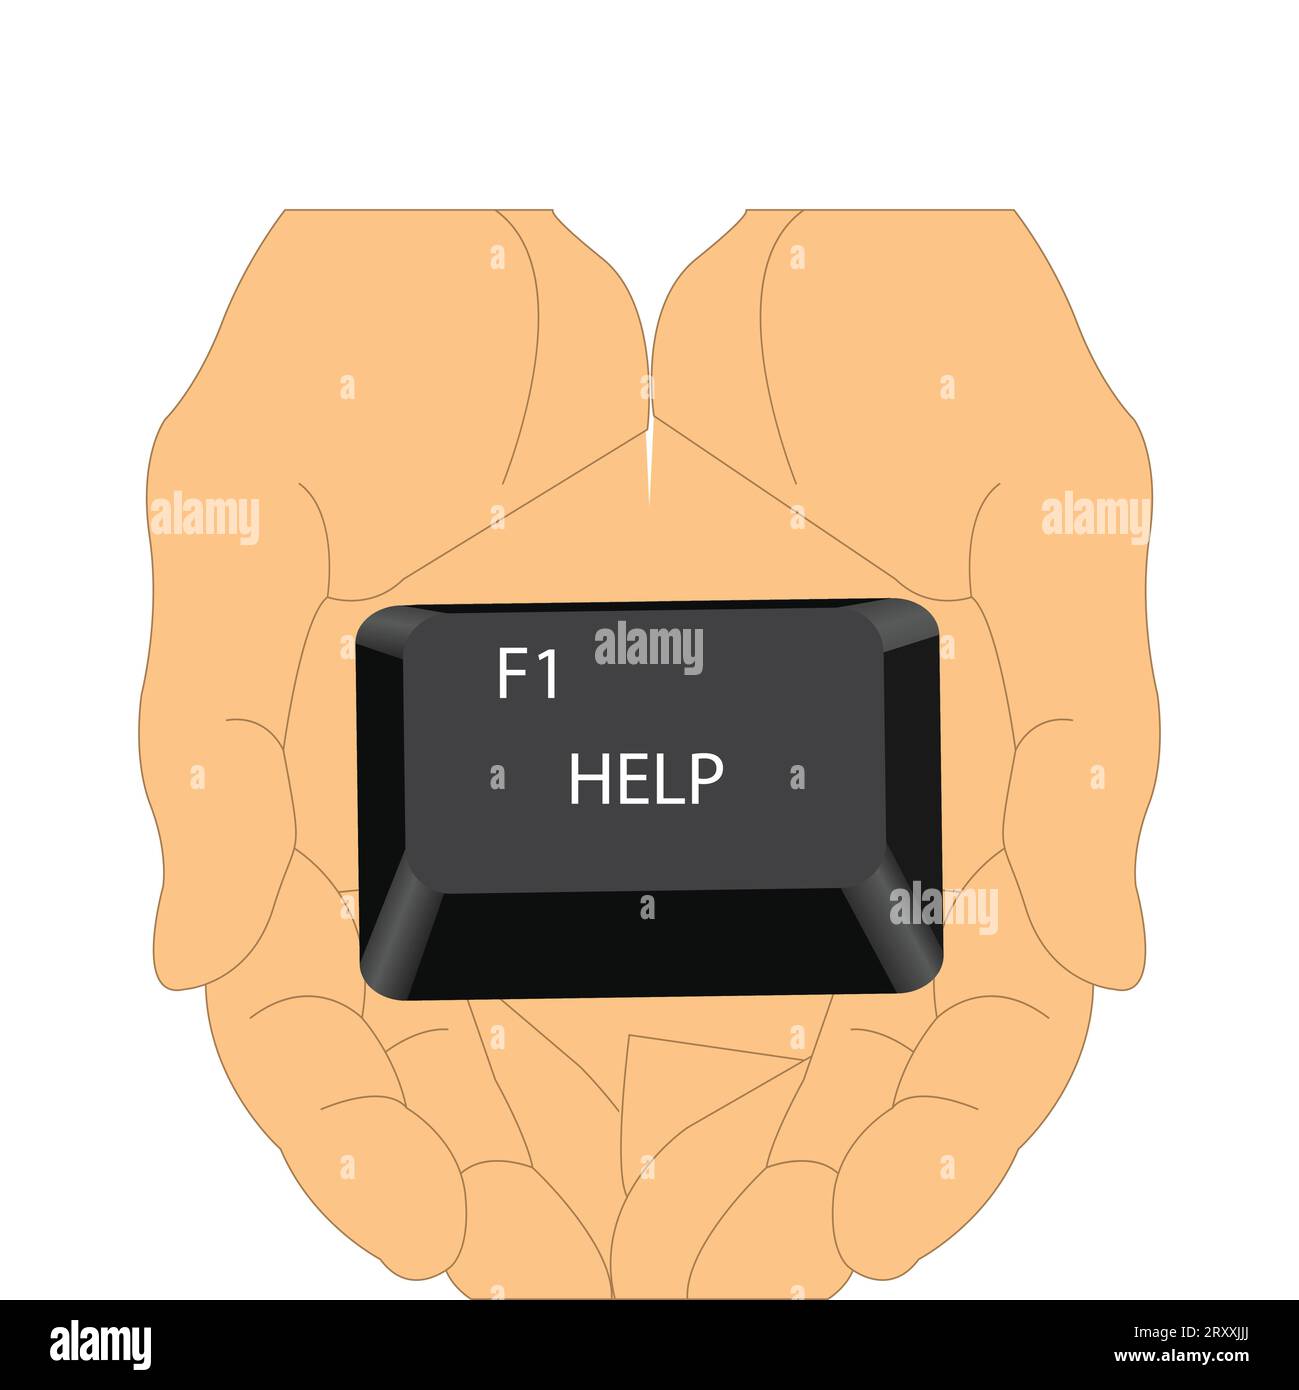 Halten Sie die Taste F1 Help (Hilfe) von einer Tastatur aus gedrückt Stock Vektor